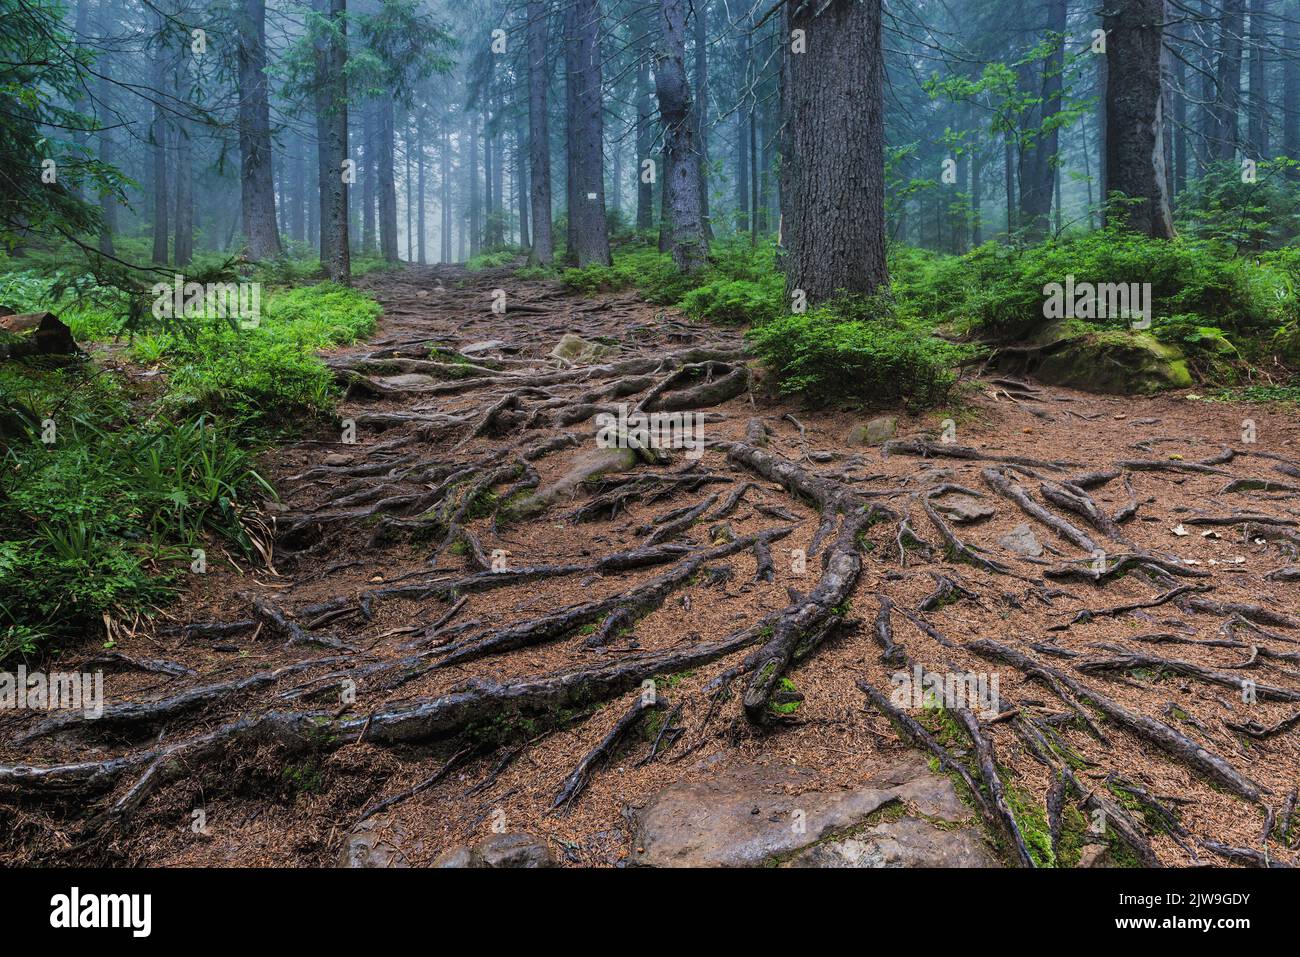 Forêt féoggy enchantée avec racines d'arbre effrayantes. Forêt mystique profonde Banque D'Images